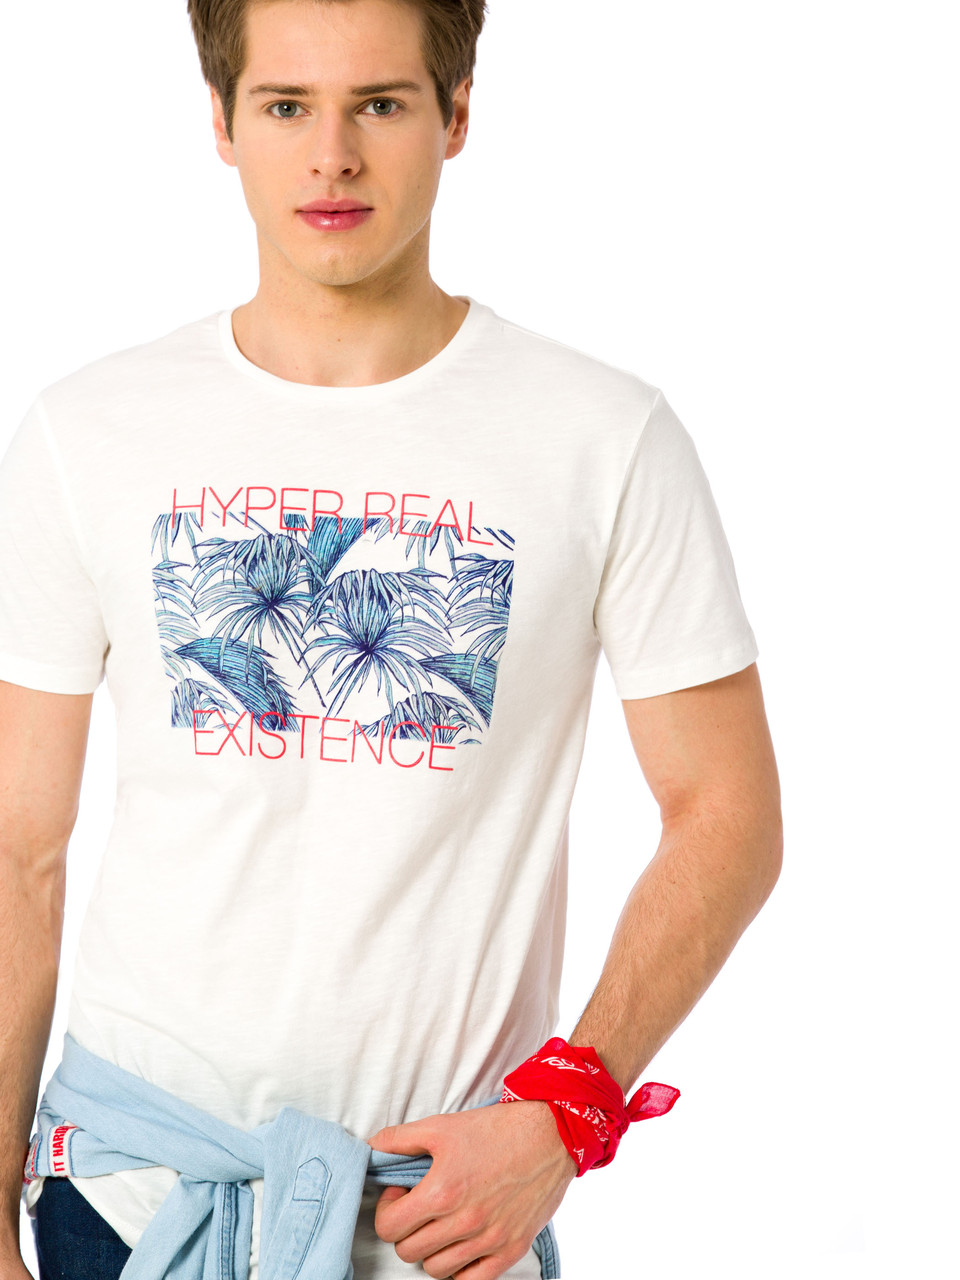 Біла чоловіча футболка Lc Waikiki / Лз Вайкікі з написом Hyper real existence